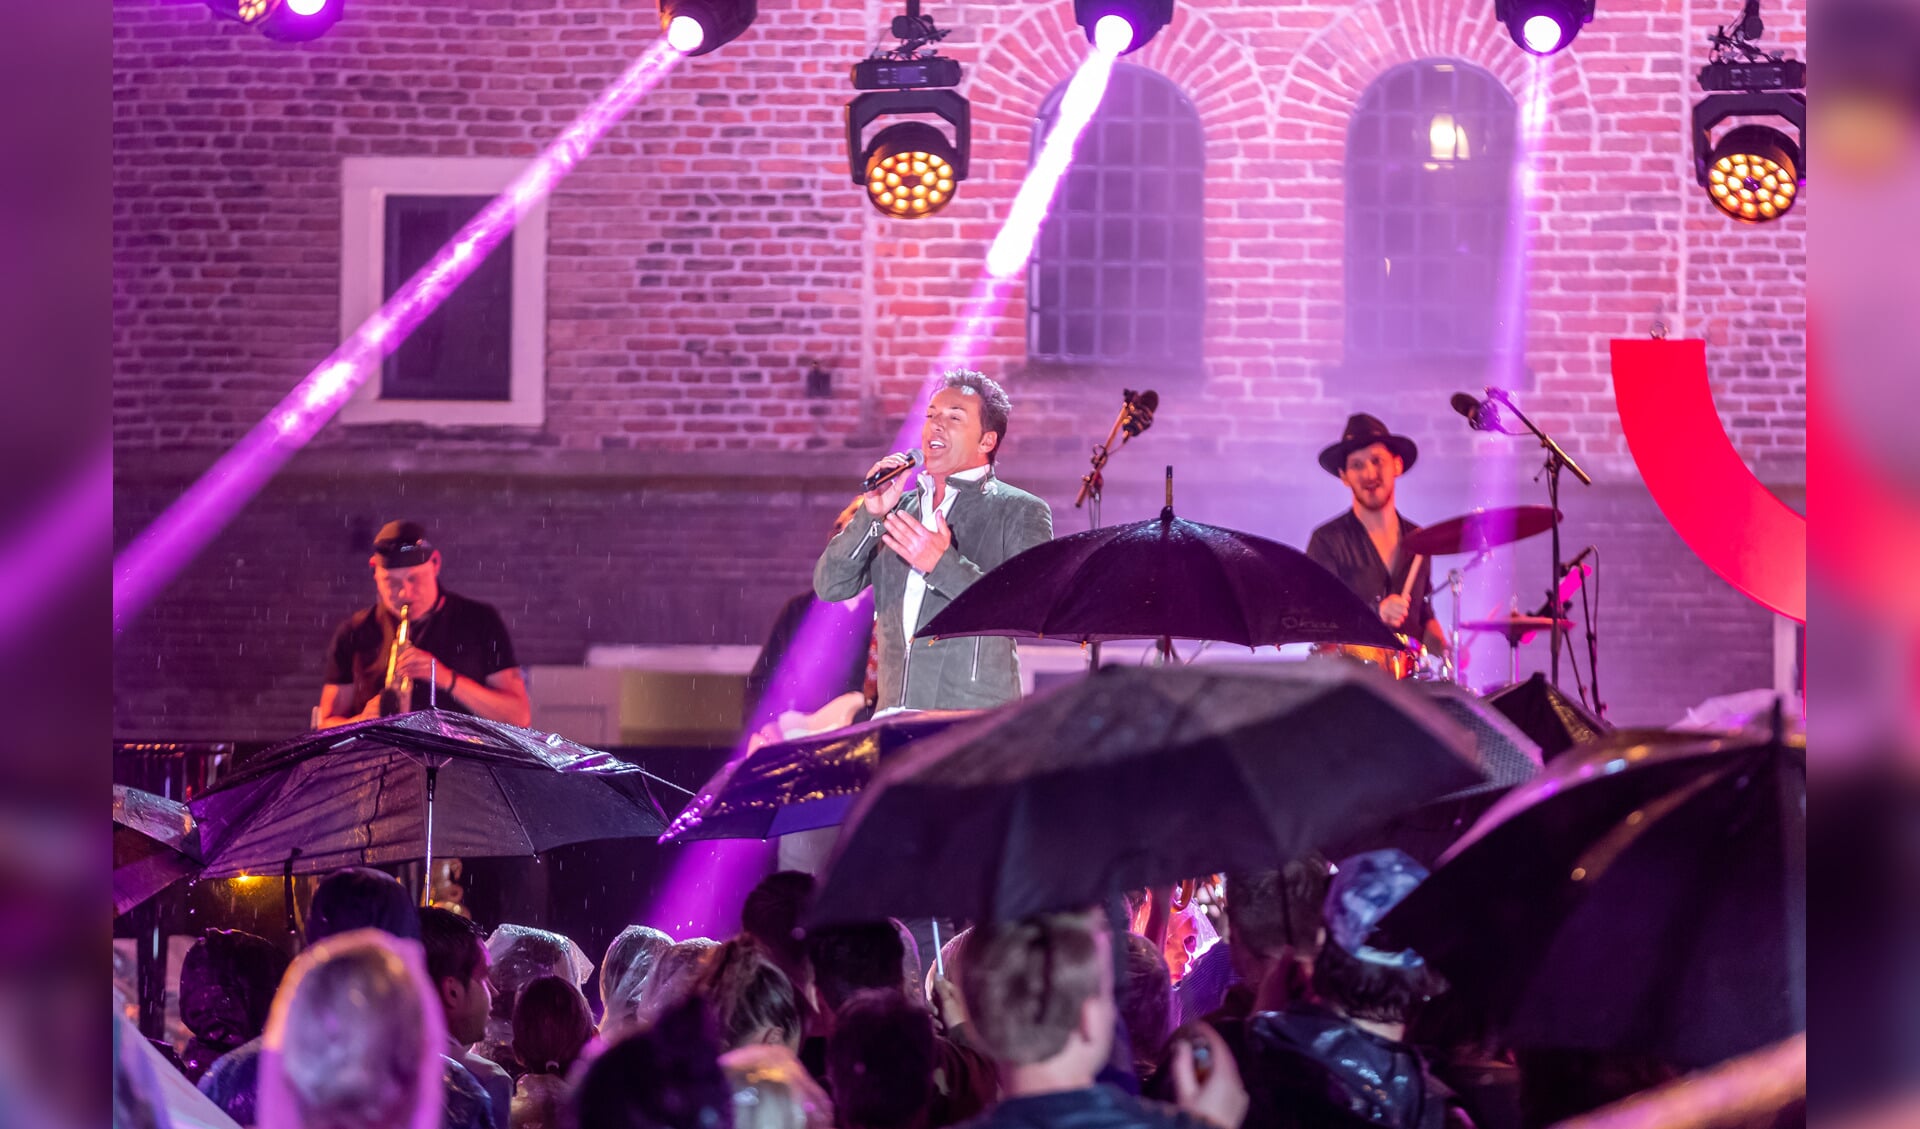 Boven de paraplu's treedt Gerard Joling op in 'Nederland staat op tegen kanker'. (Foto: Ed vd Pol)